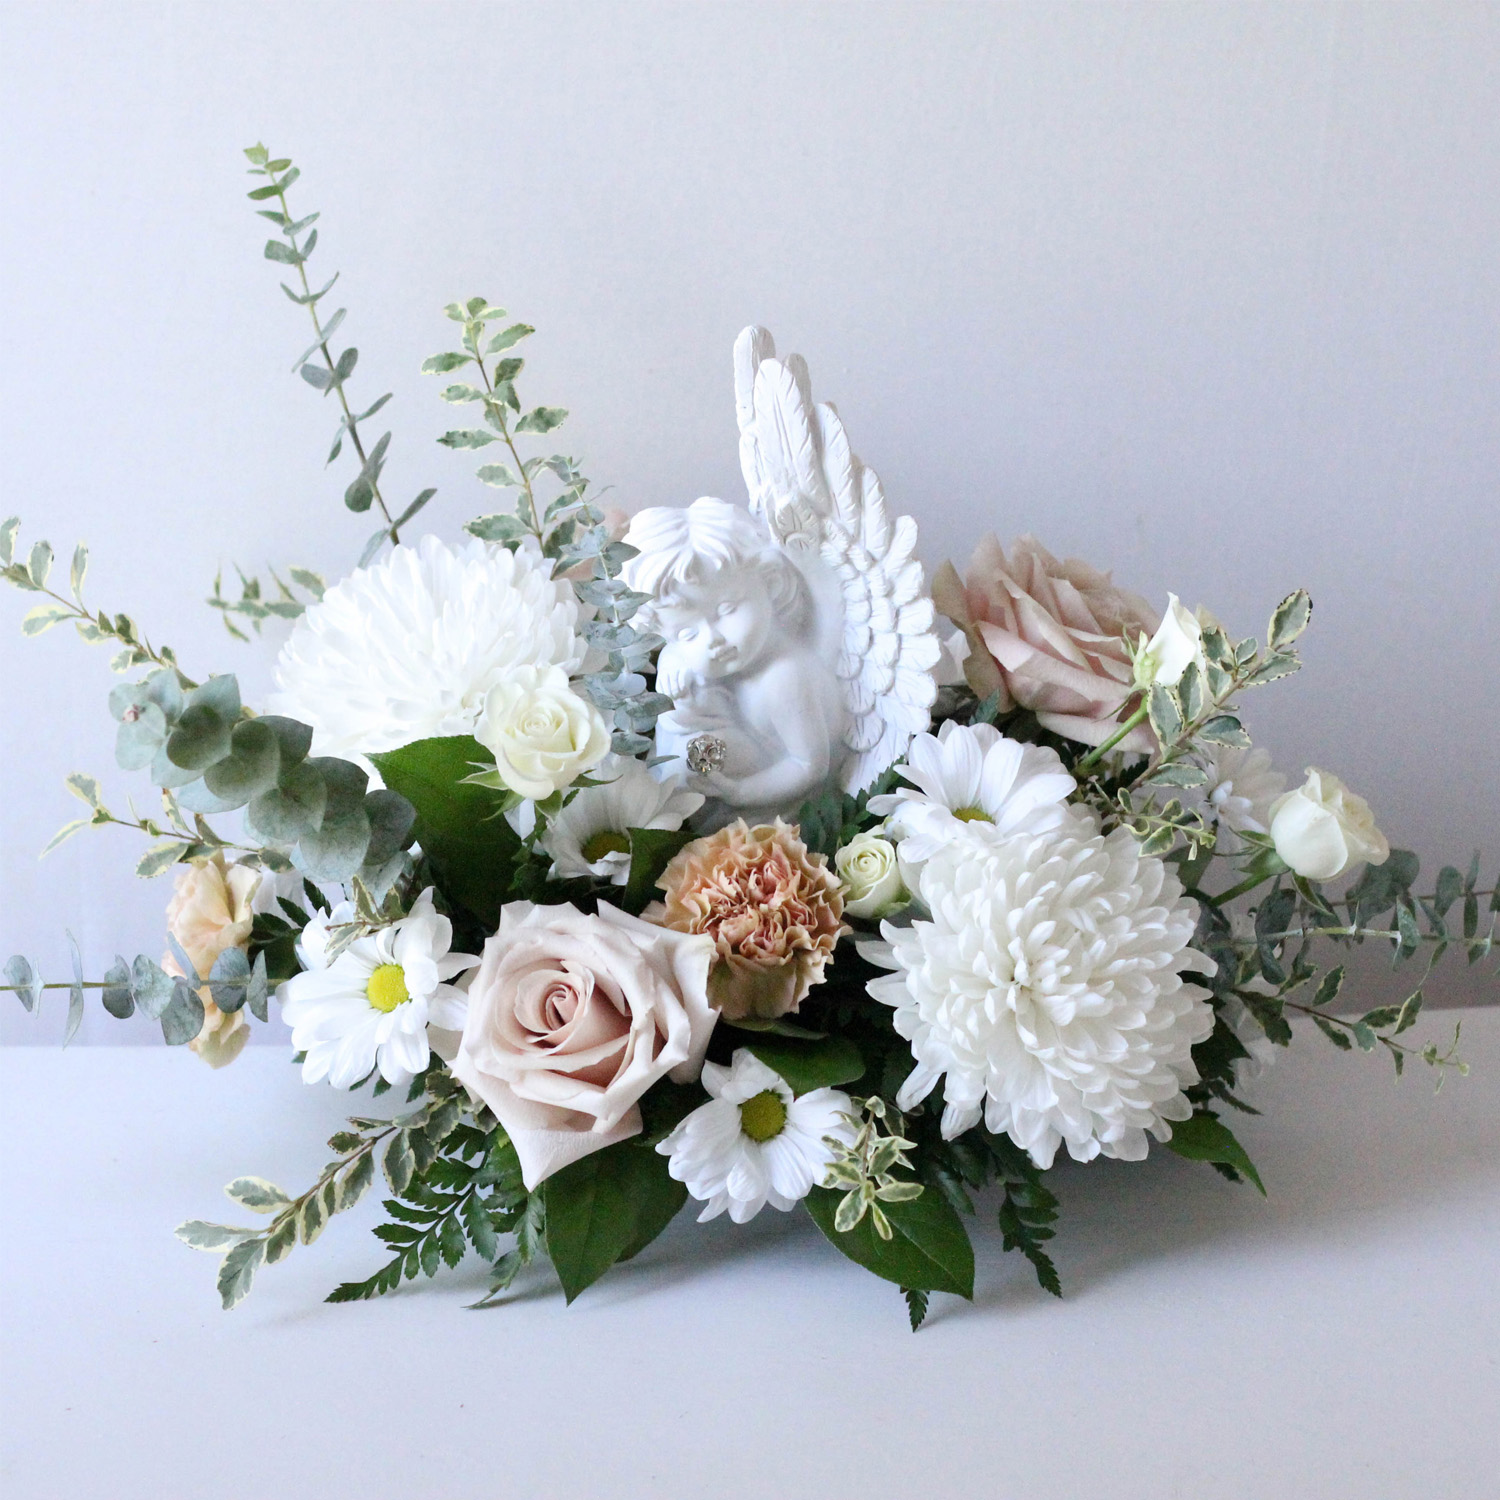 Subtle Dream White Floral Arrangement